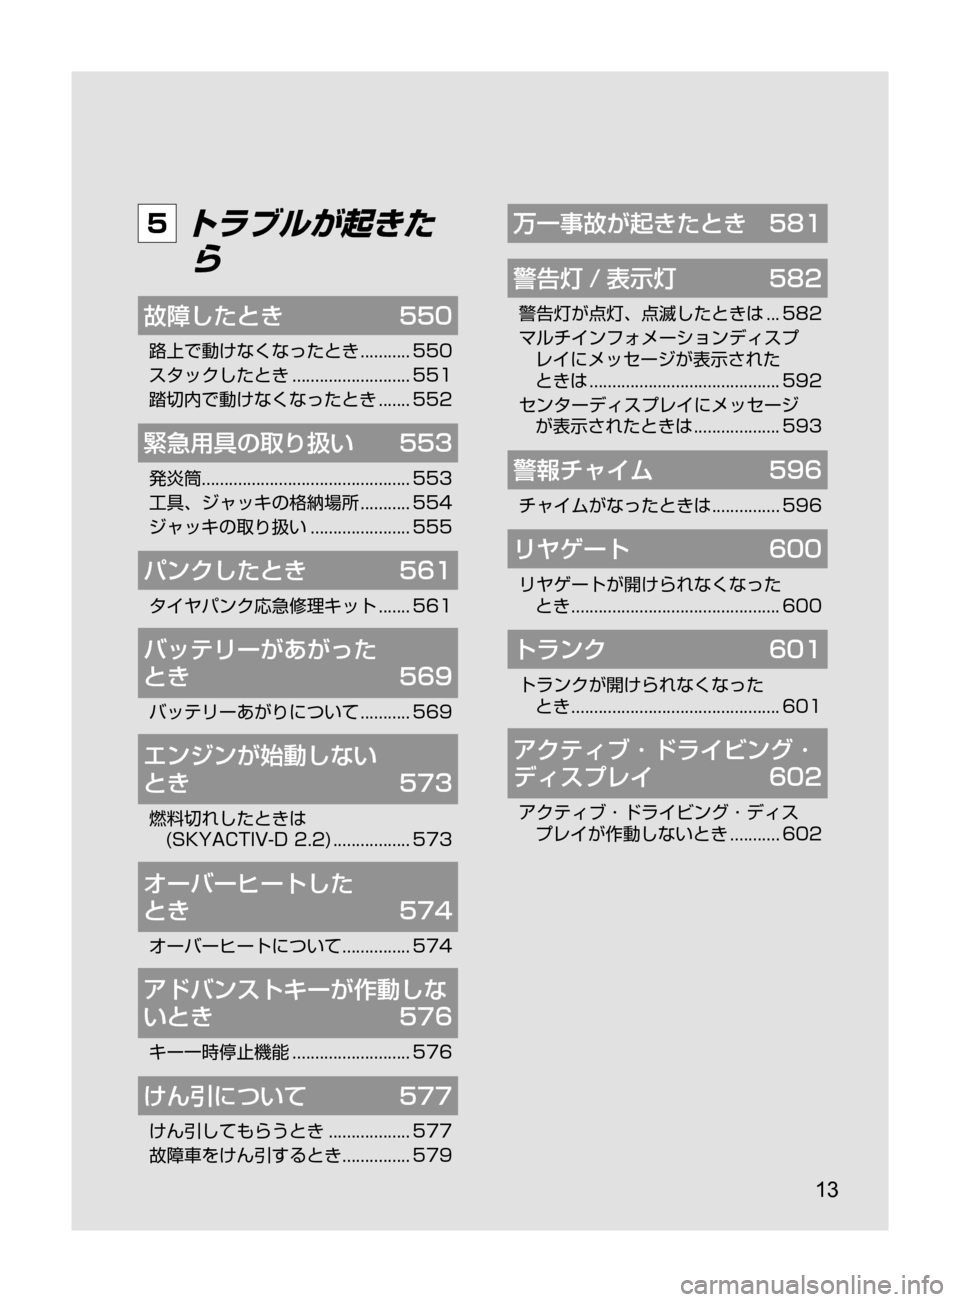 MAZDA MODEL ATENZA 2016  アテンザ｜取扱説明書 (in Japanese) 13
5 トラブルが起きたら
故障したとき	 550
路上で動けなくなったとき﻿﻿........... 550
スタックしたとき ﻿﻿
.......................... 551
踏切内で動け�